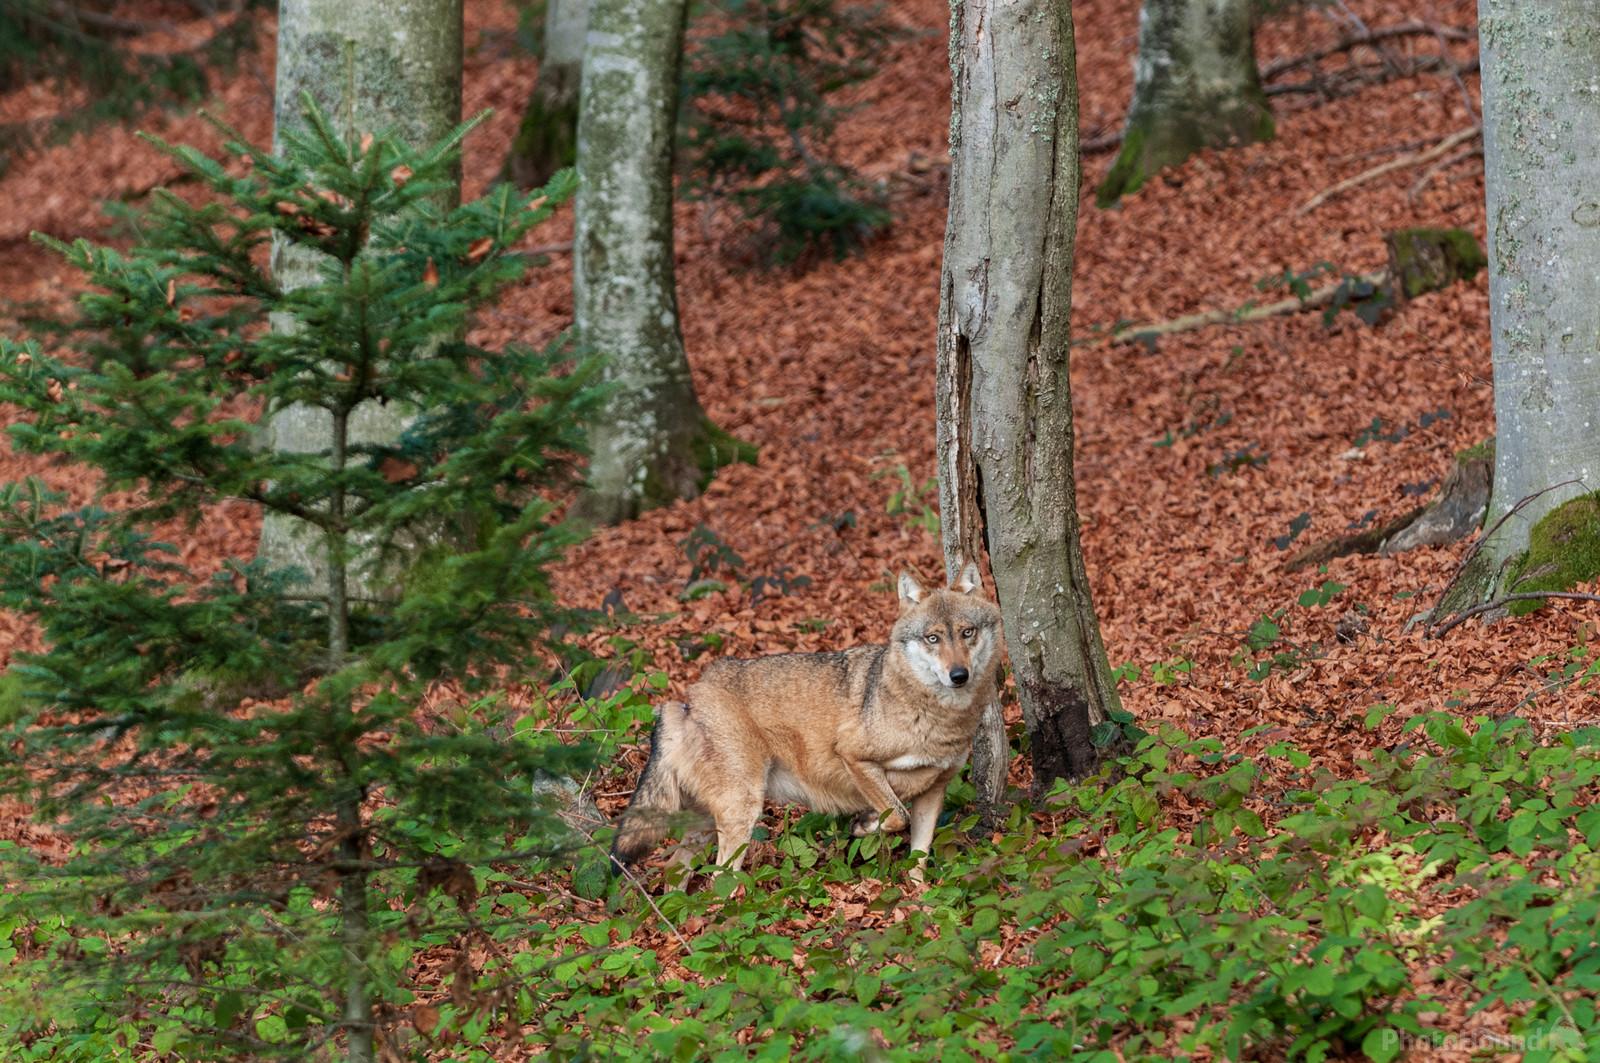 Image of Wildlife Park Bayerischer Wald by Luka Esenko